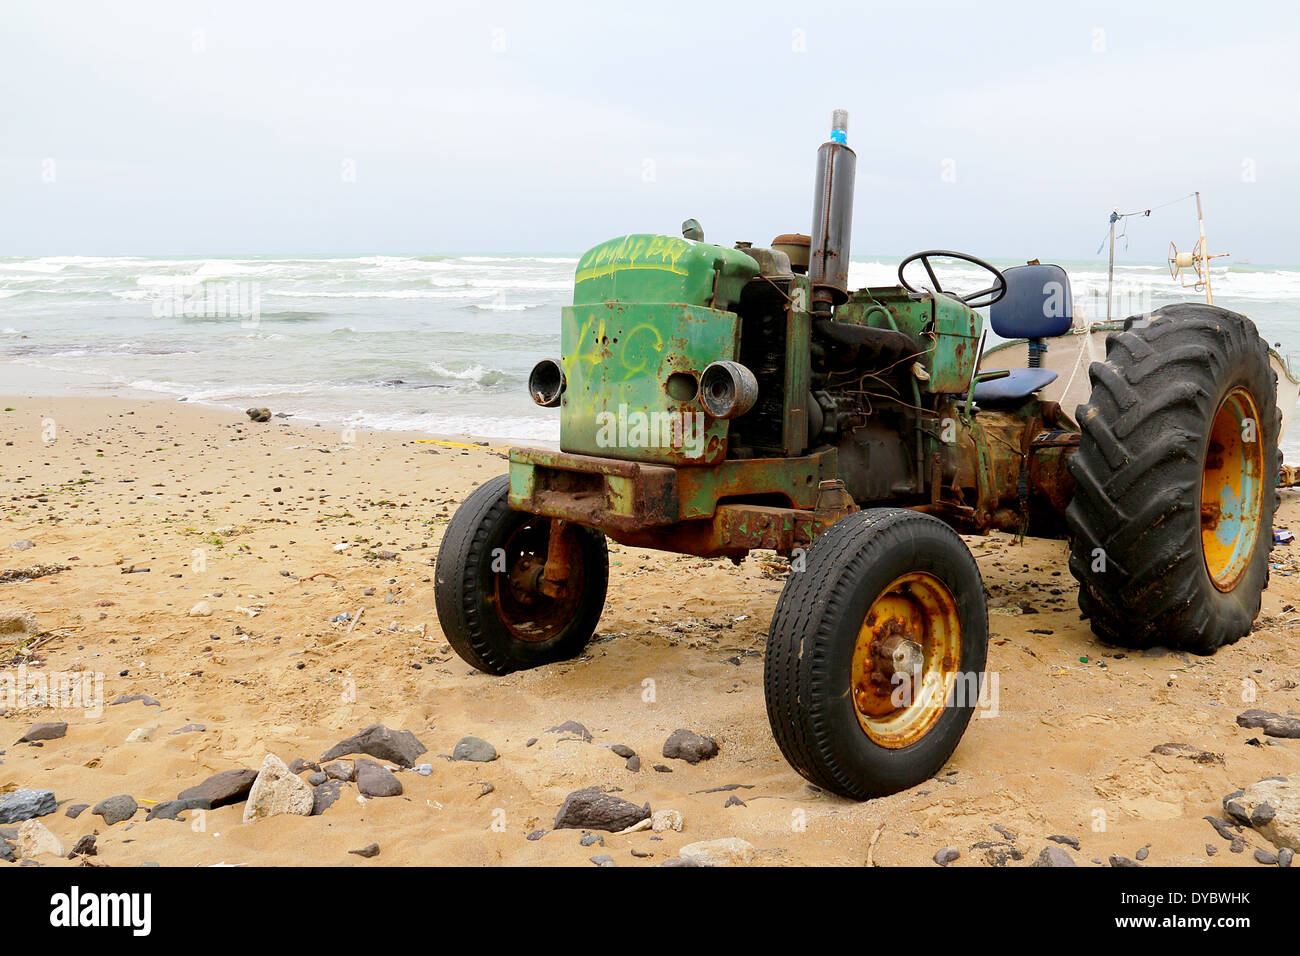 Immagine di un trattore arrugginito sulla spiaggia Foto Stock